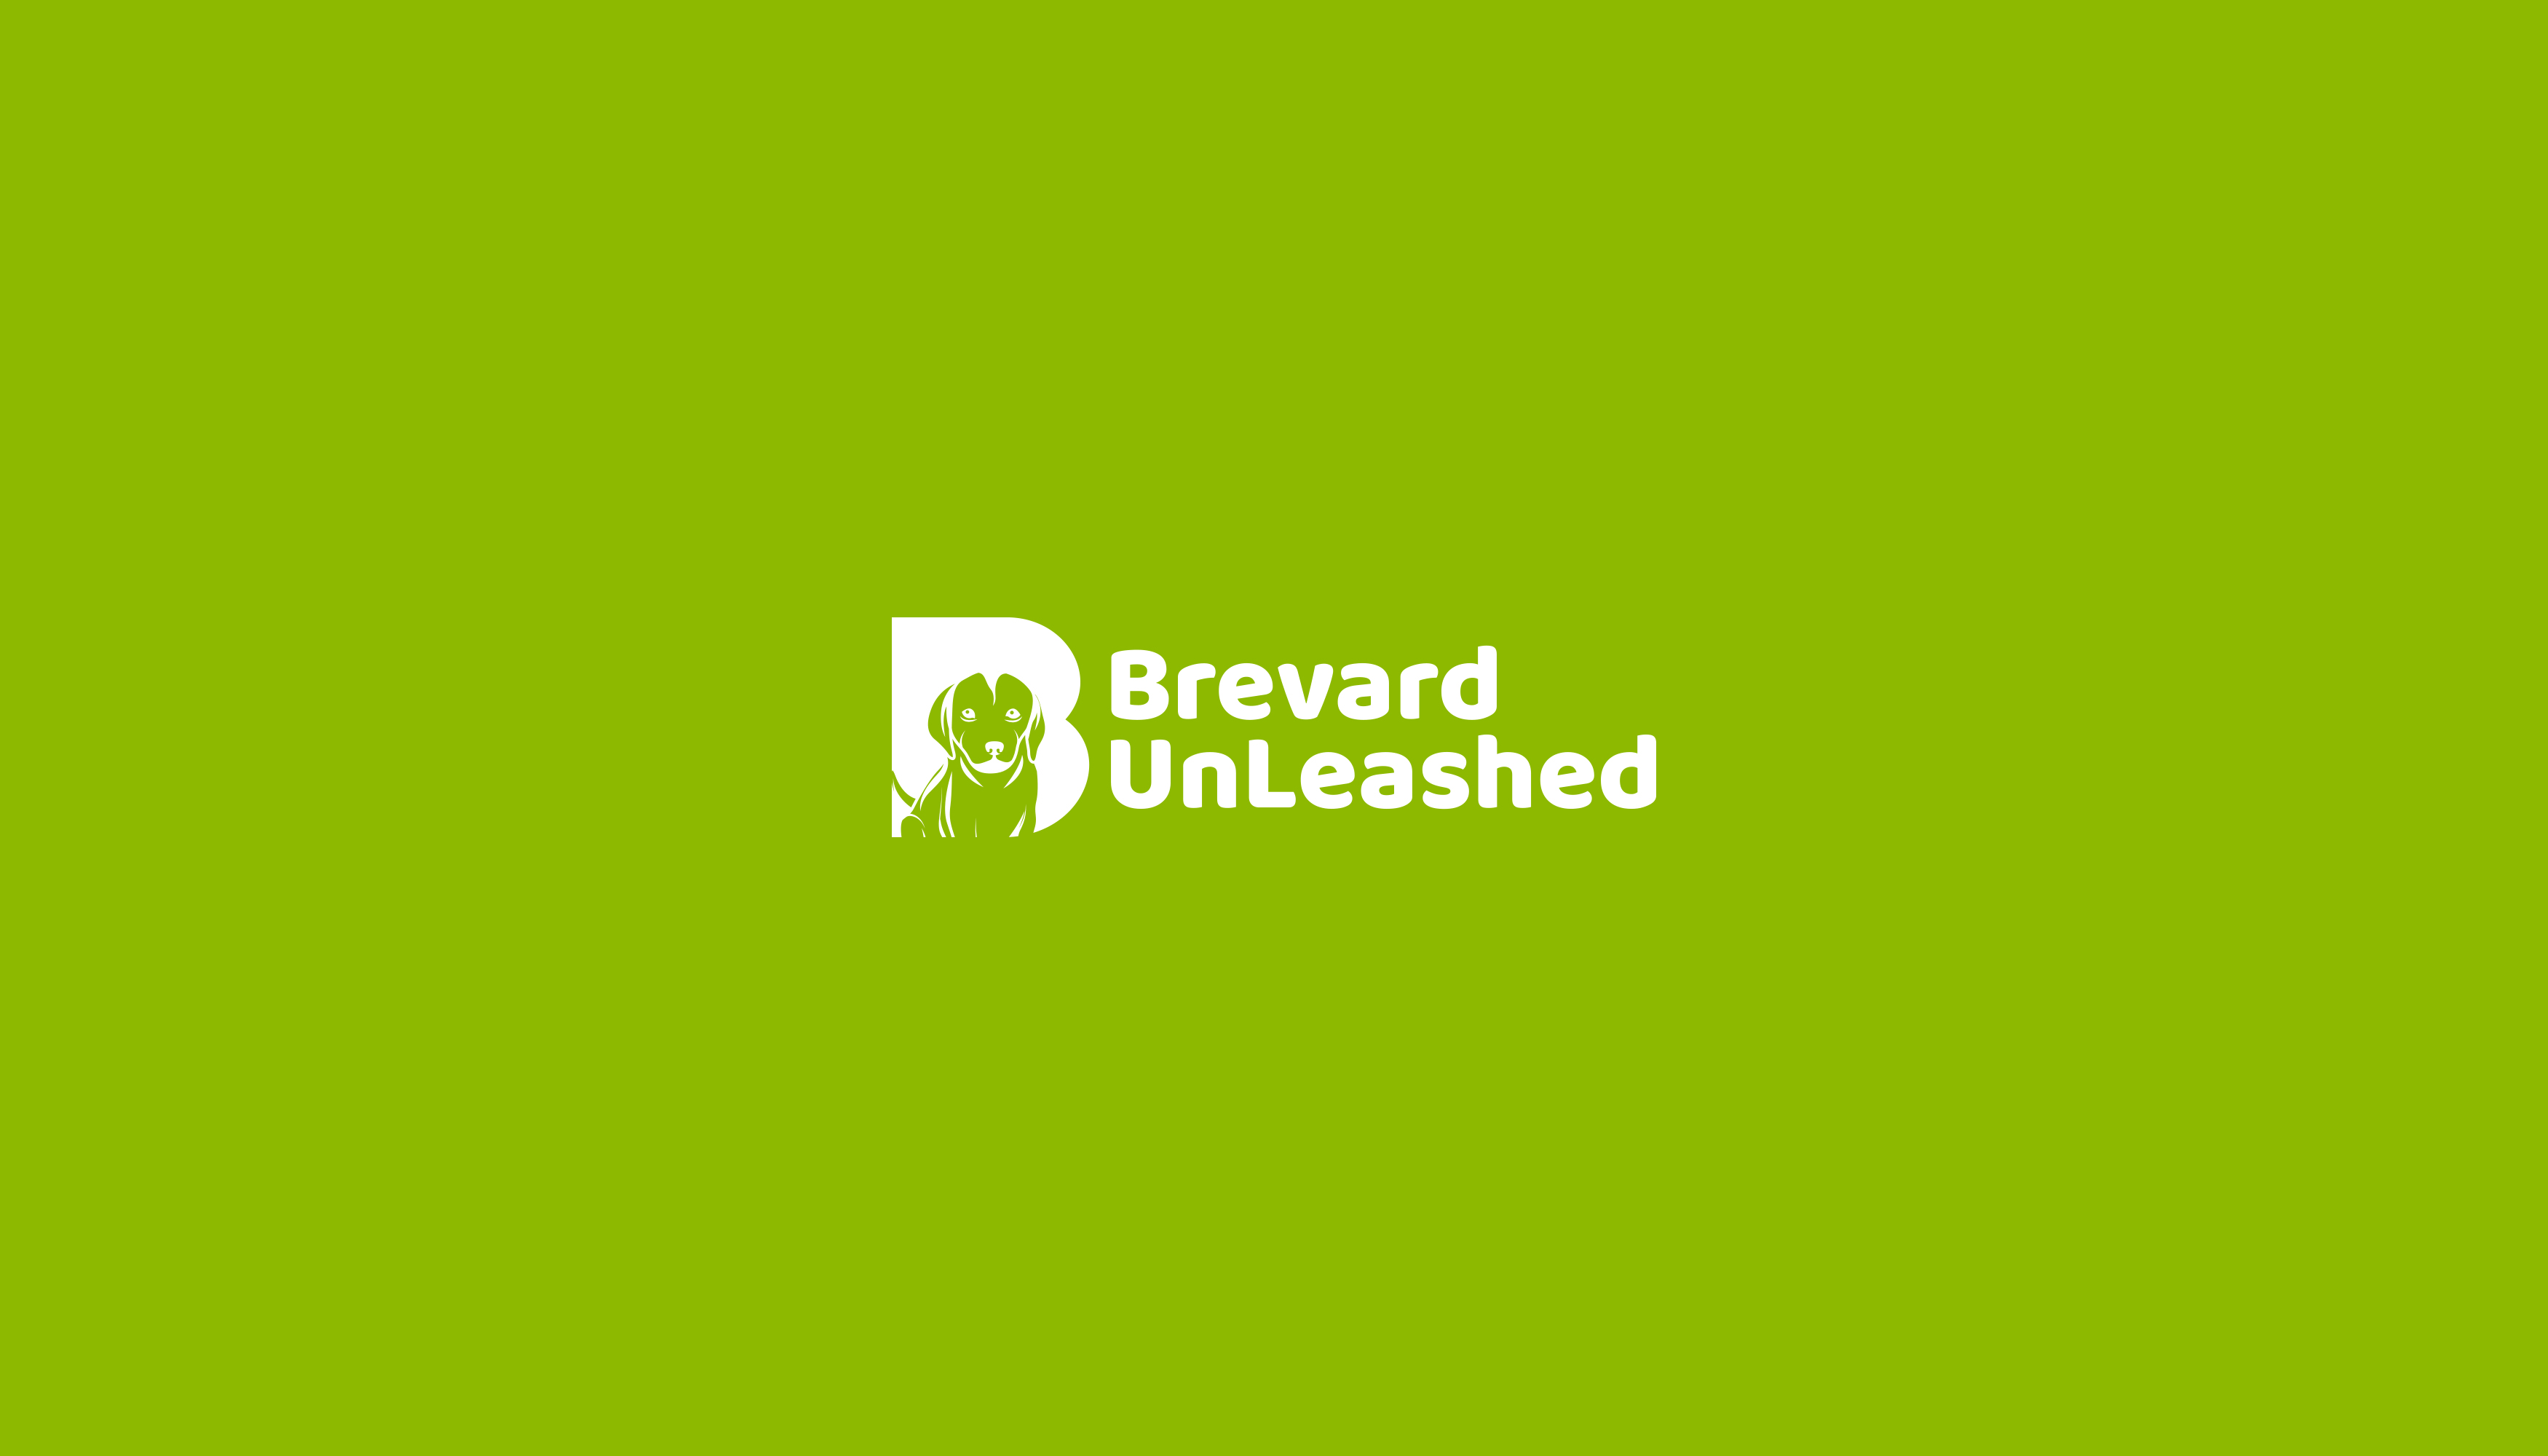 Brevard Unleashed Design #9